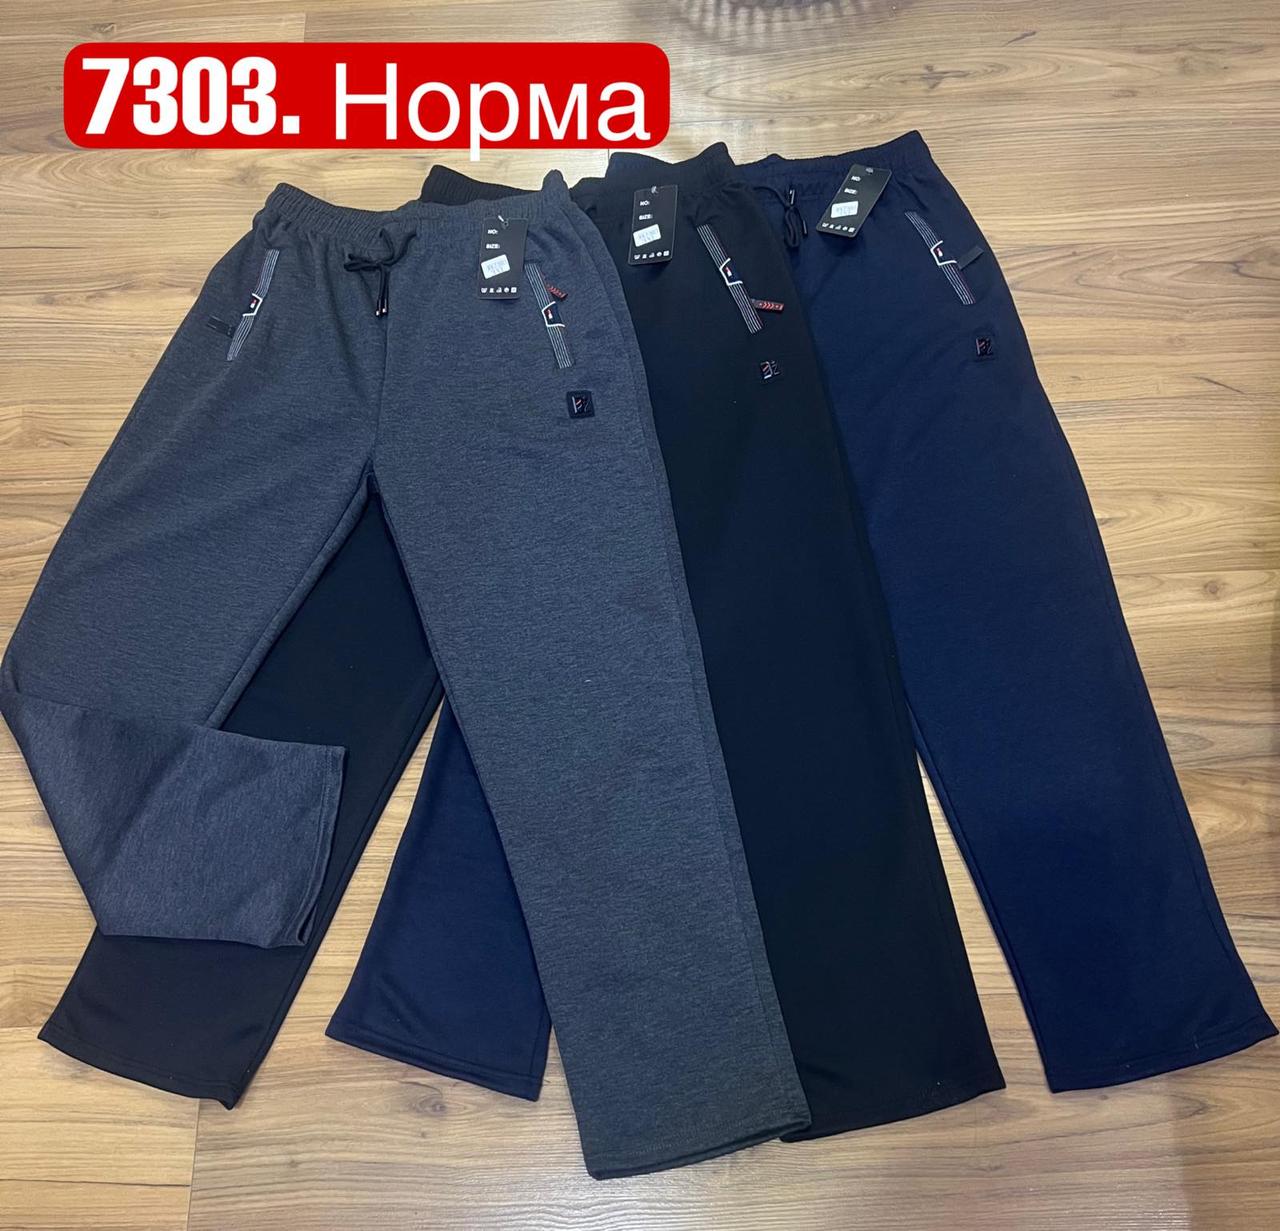 Чоловічі спортивні штани, прямі №7303 р.М-3XL (46,48,50,52,54)